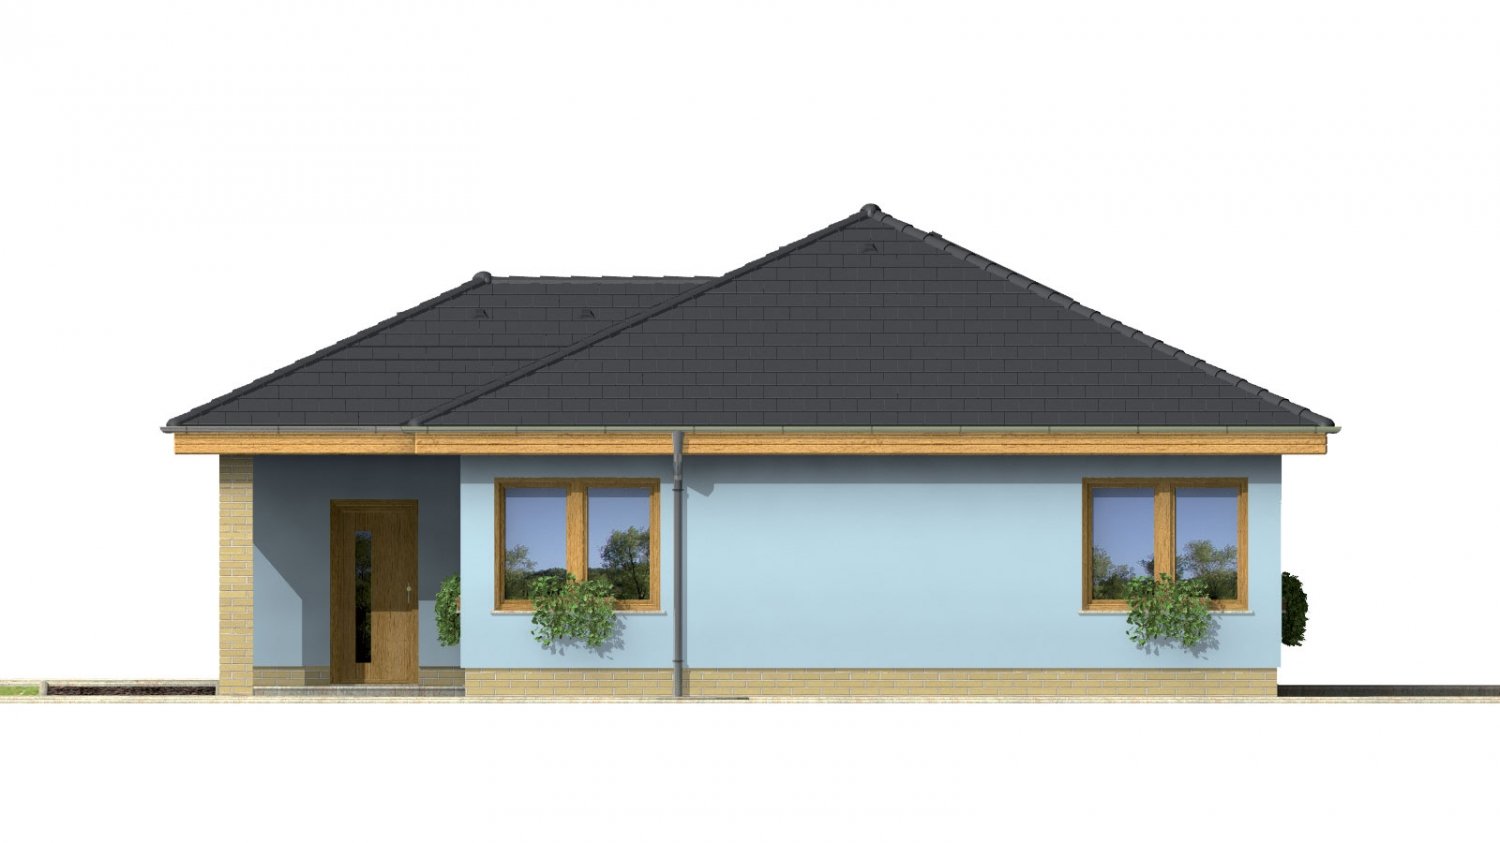 Pohľad 4. - Projekt přízemního rodinného domu s garáží, valbovou střechou a terasou.